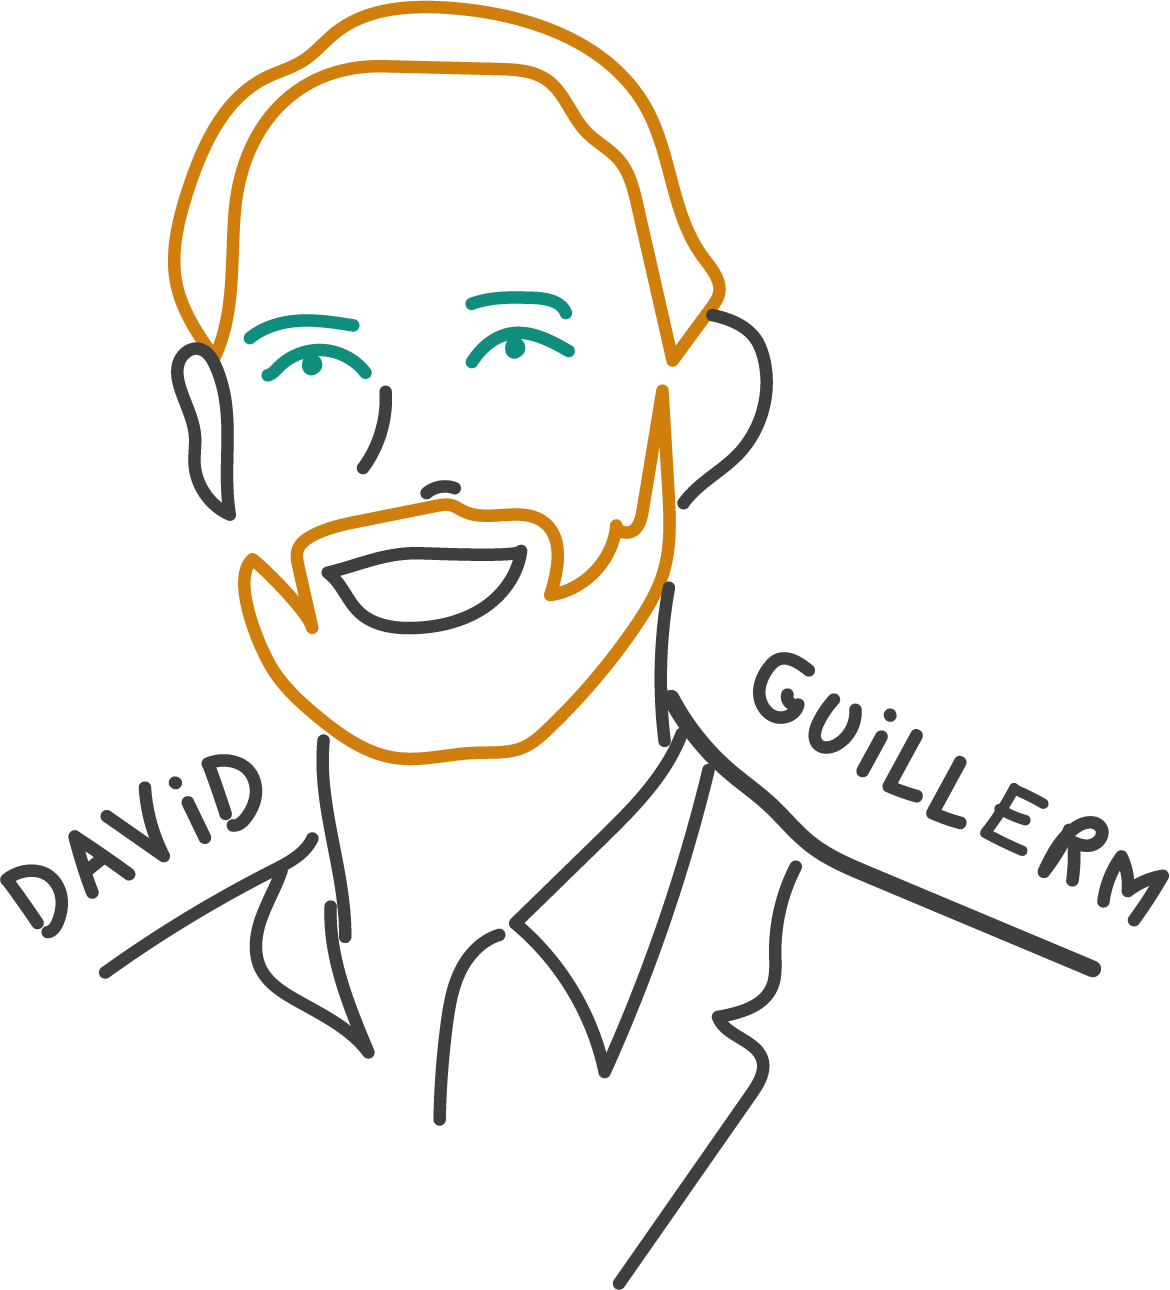 David Guillerm